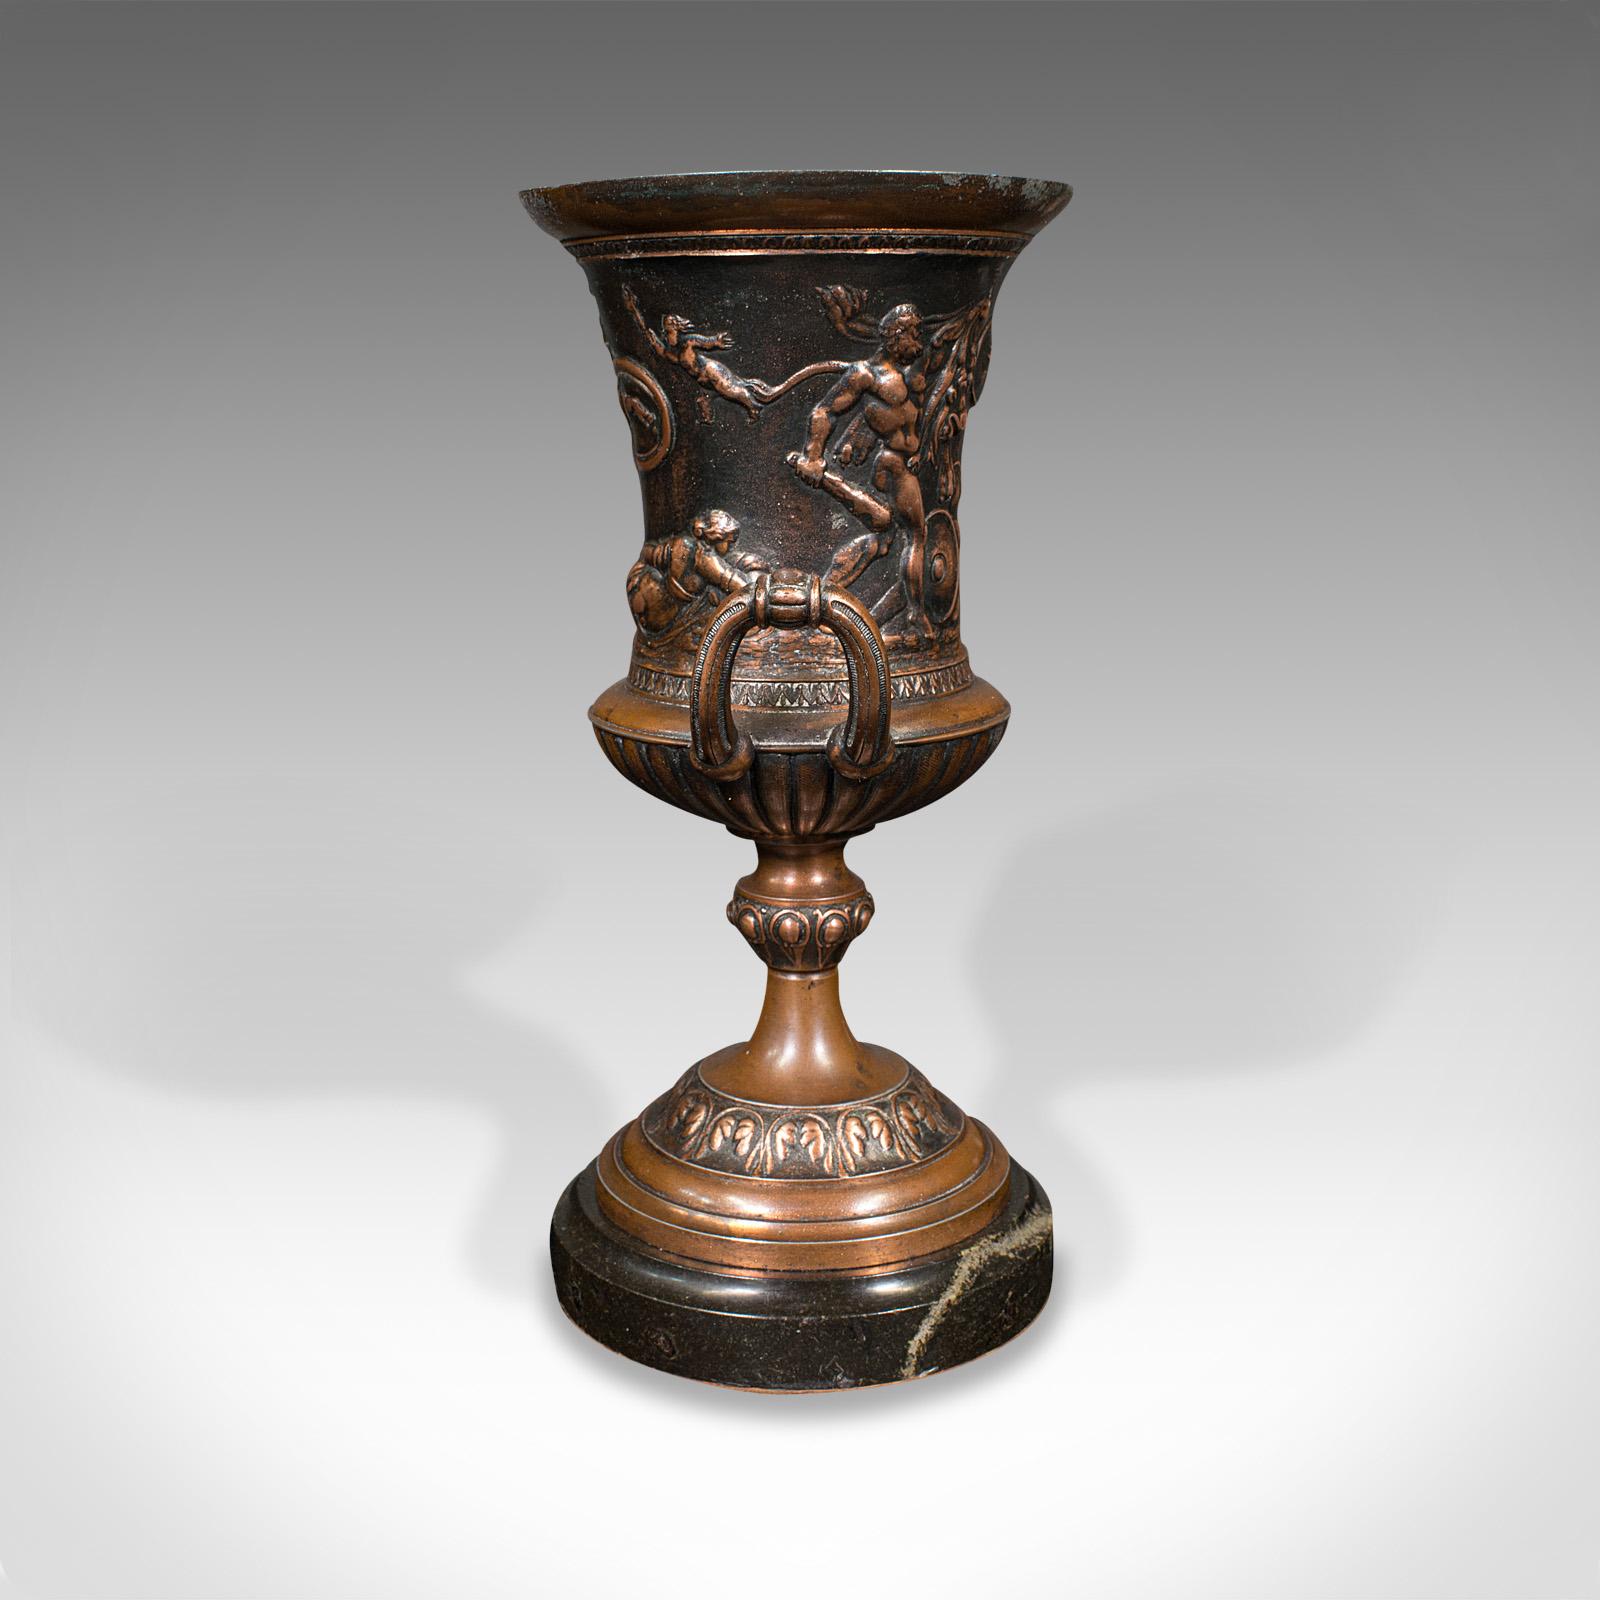 19th Century Pair, Antique Grand Tour Urns, Italian, Decorative Vase, Roman Taste, Victorian For Sale